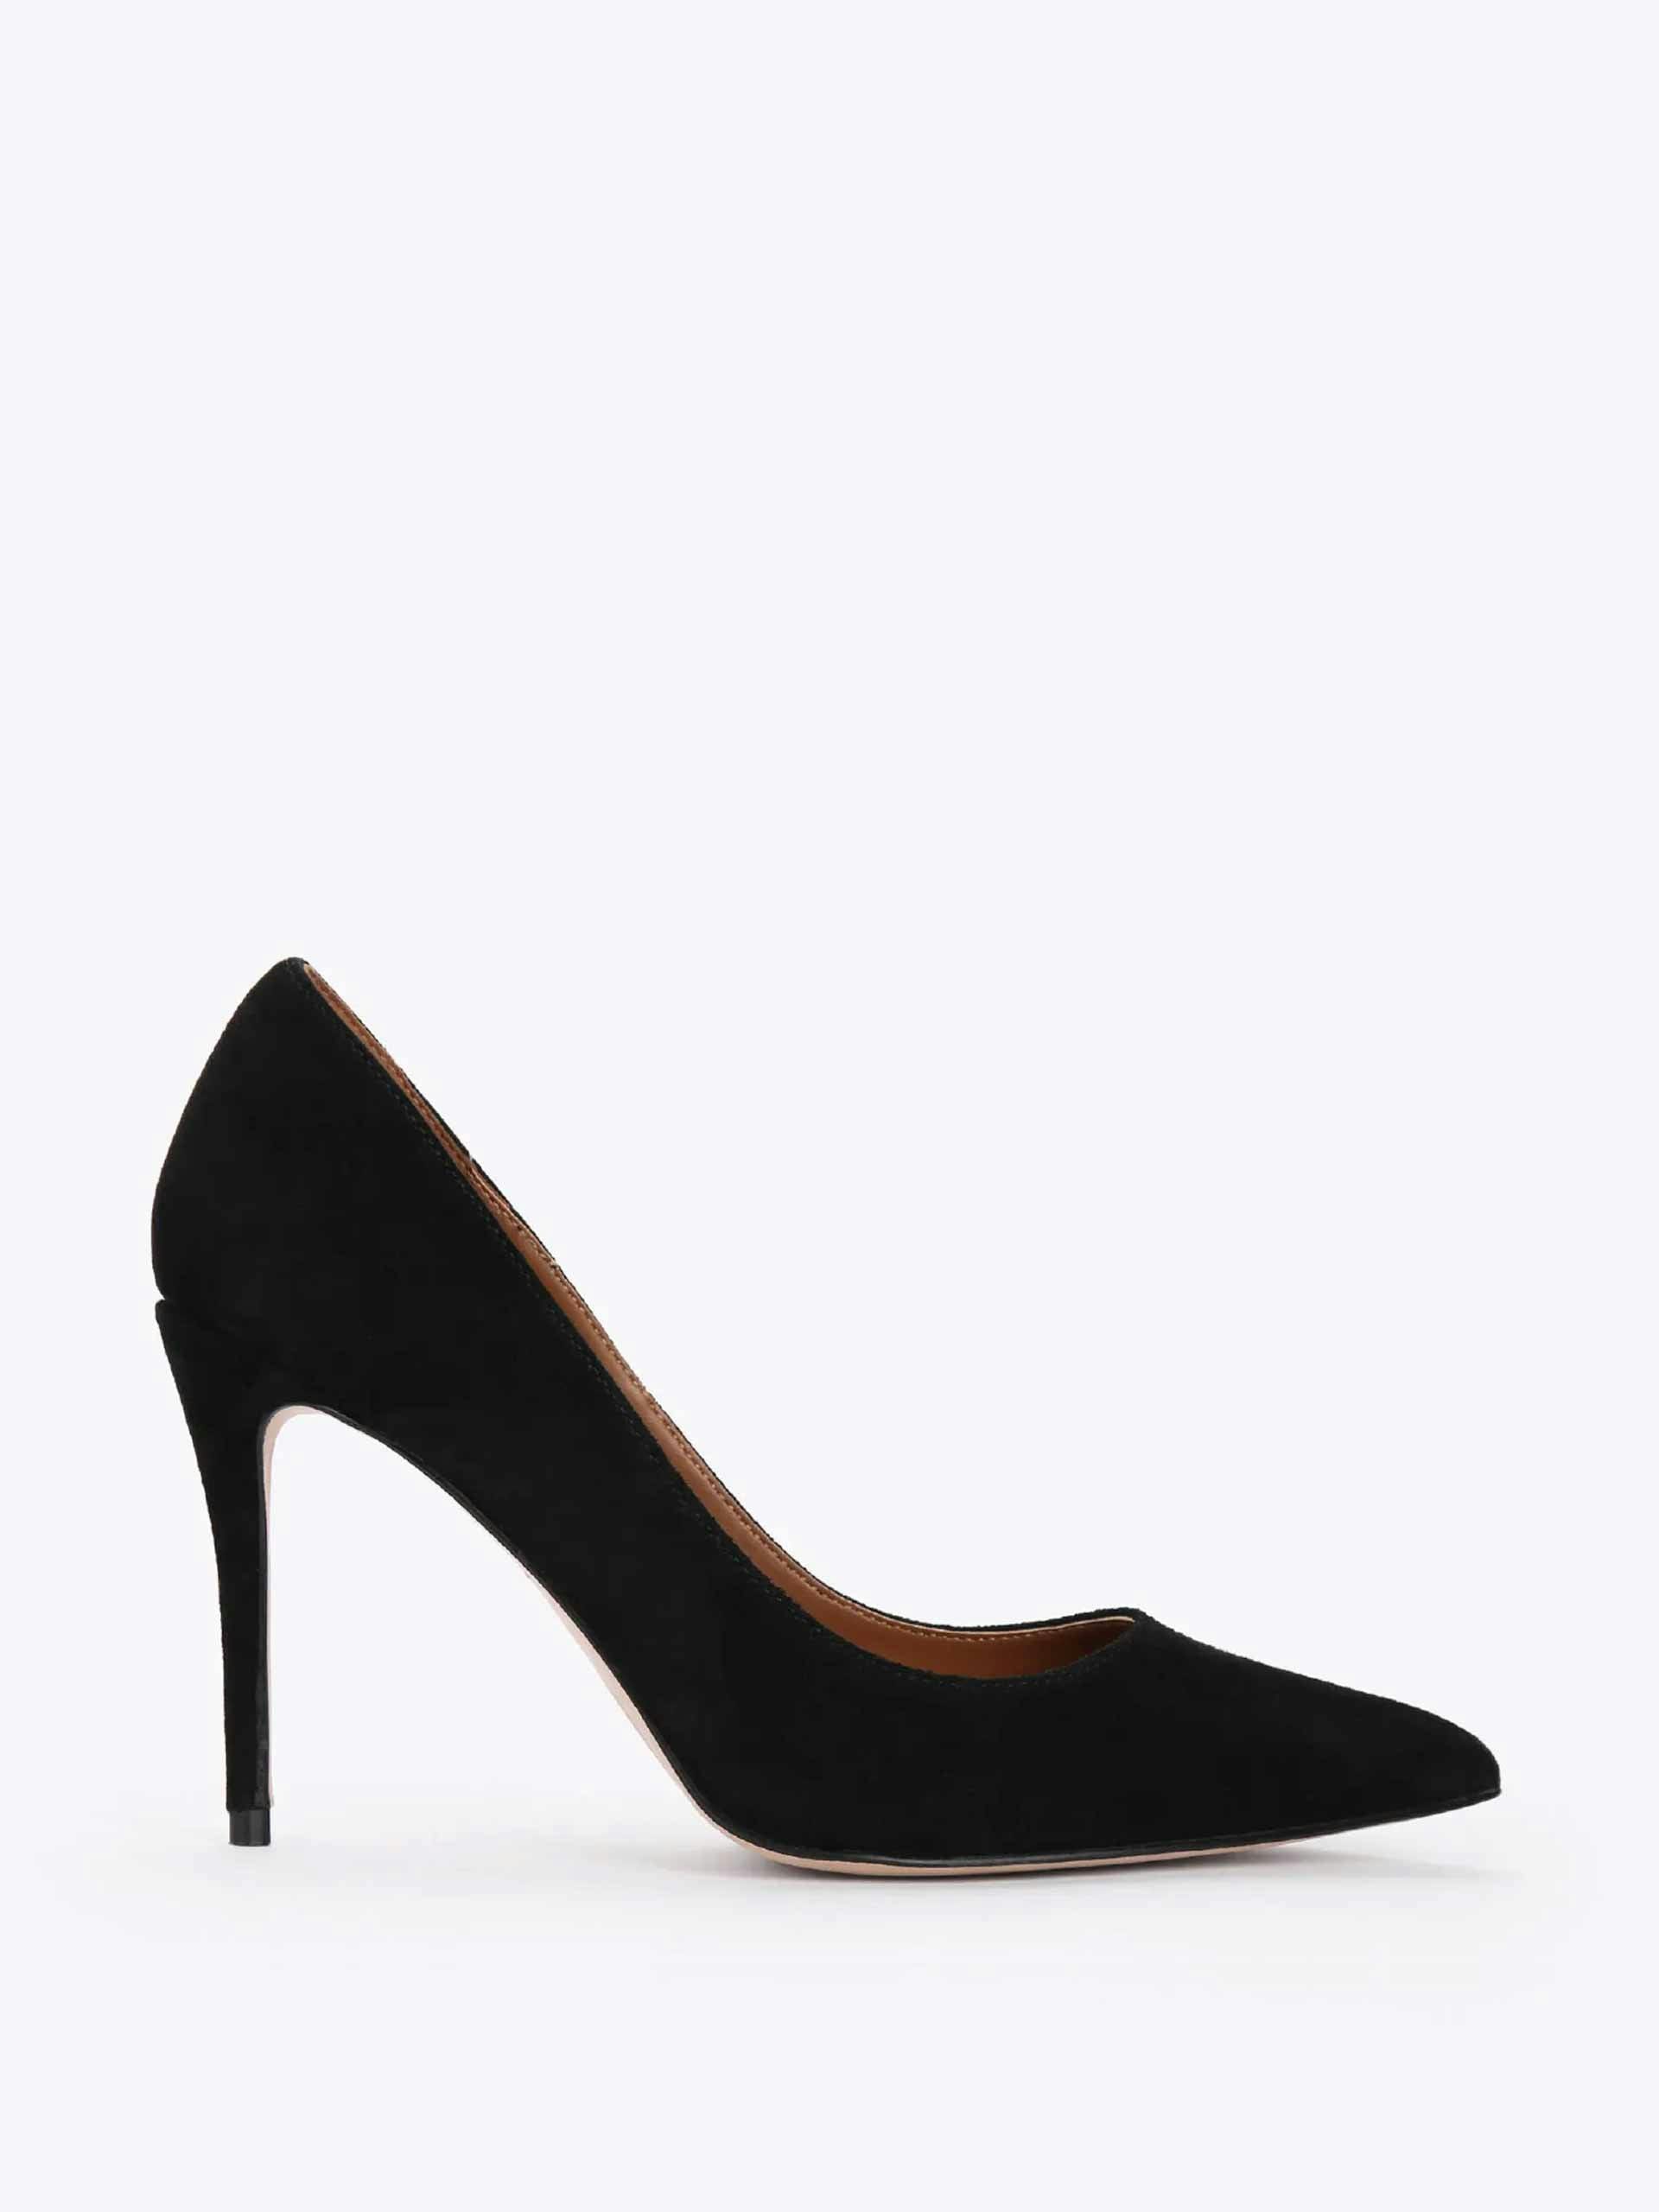 Belgravia heels